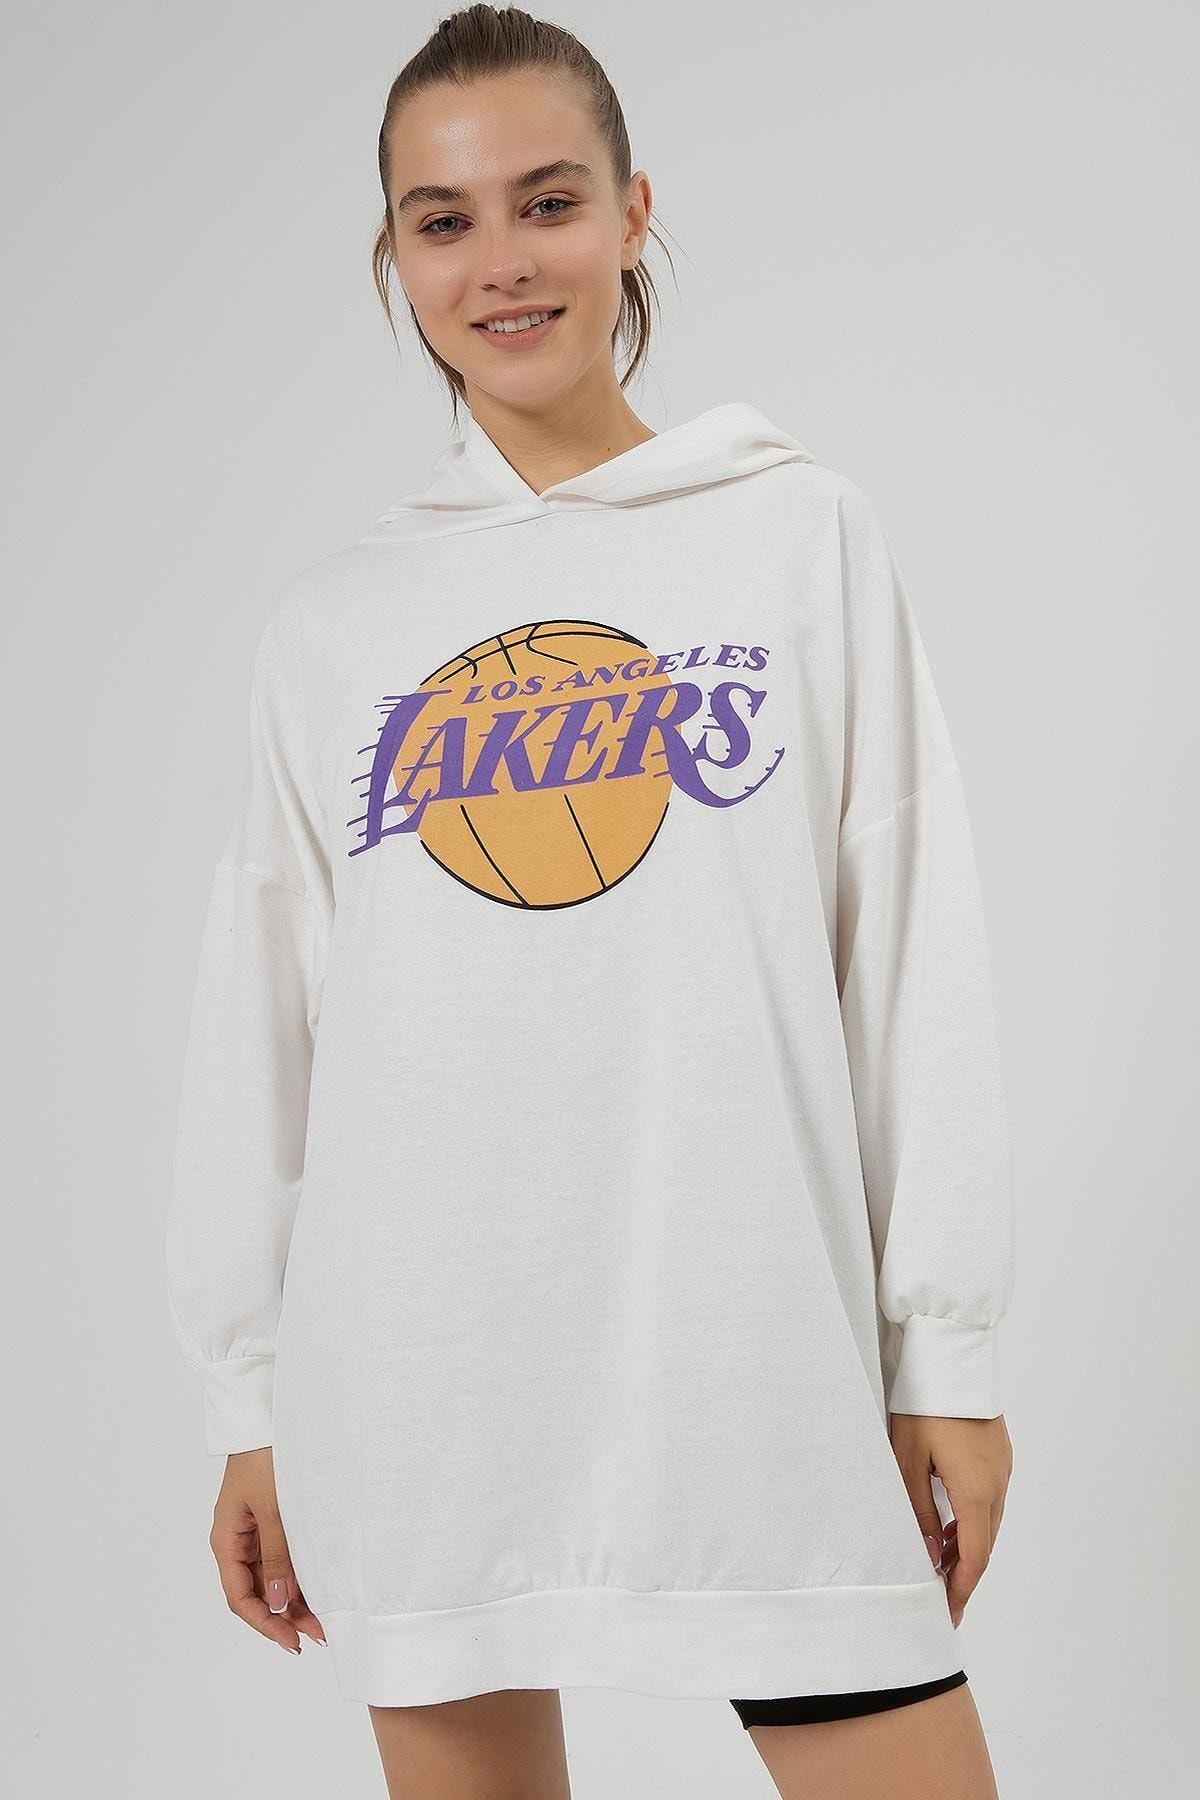 Pattaya Kadın Lakers Baskılı Oversize Sweatshirt Y20w185-1280